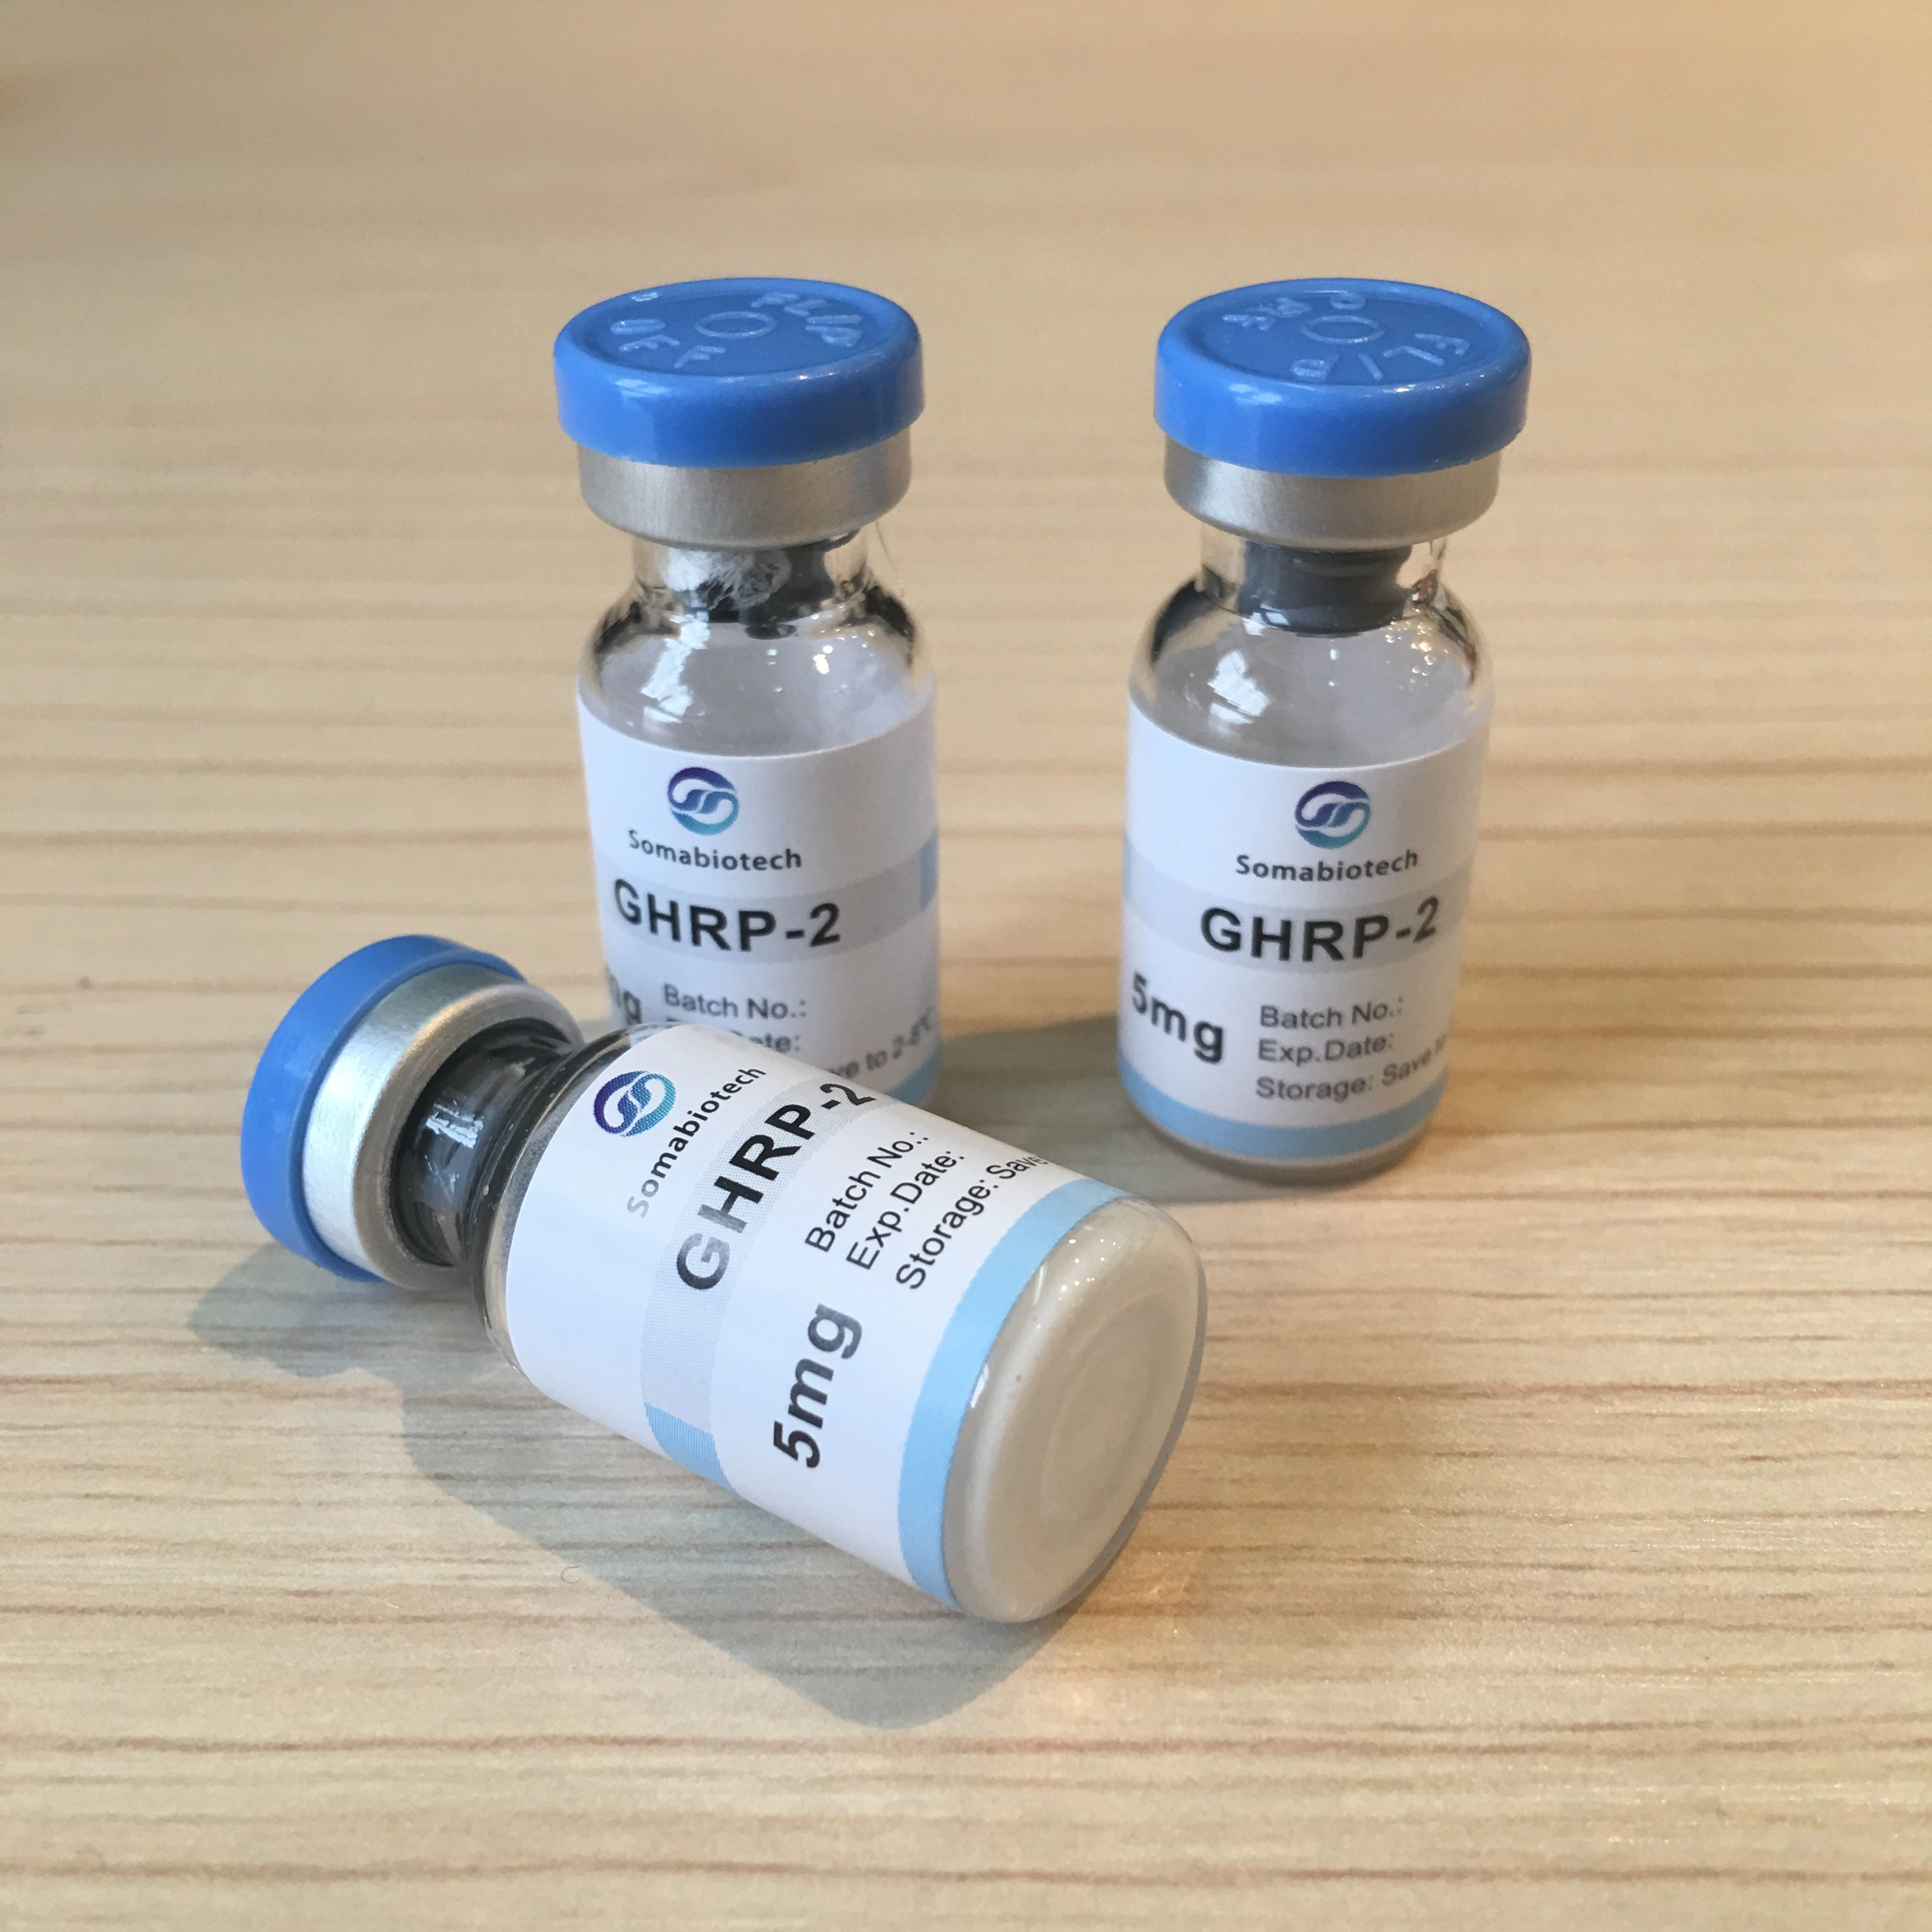 ฮอร์โมนการเจริญเติบโต GHRP-2 ปล่อยเปปไทด์